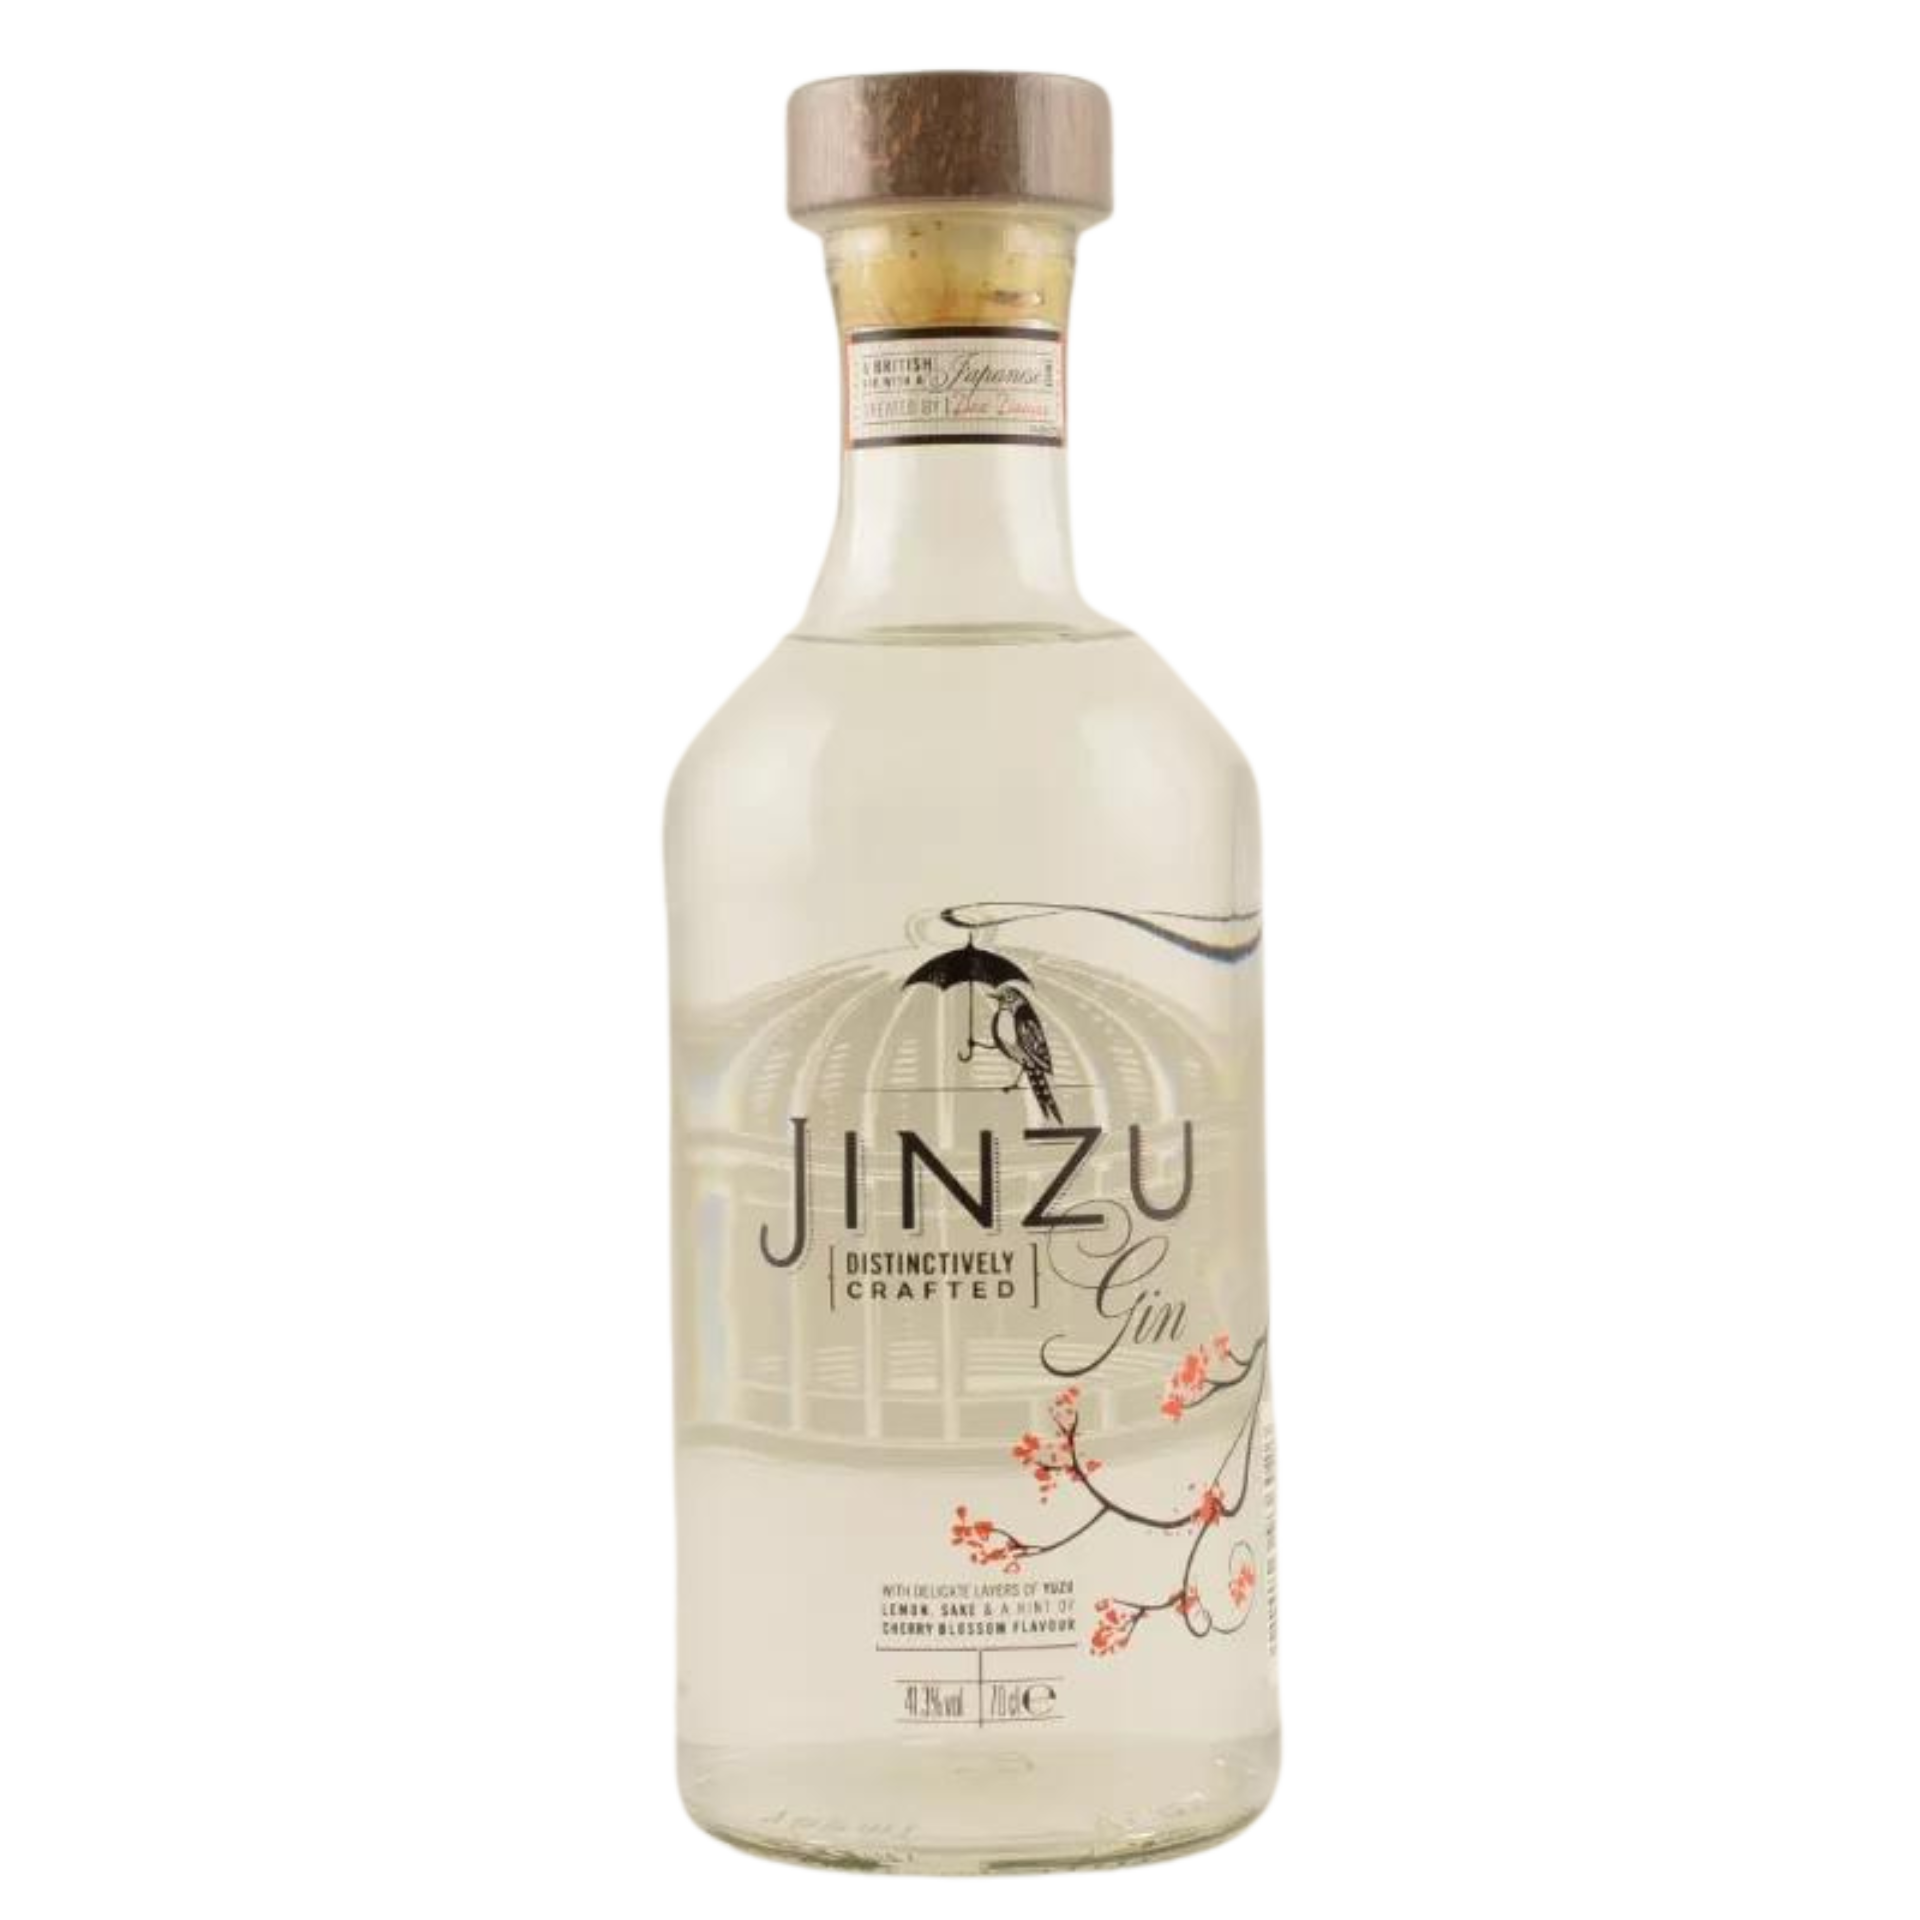 Jinzu Gin 41,3% 0,7l